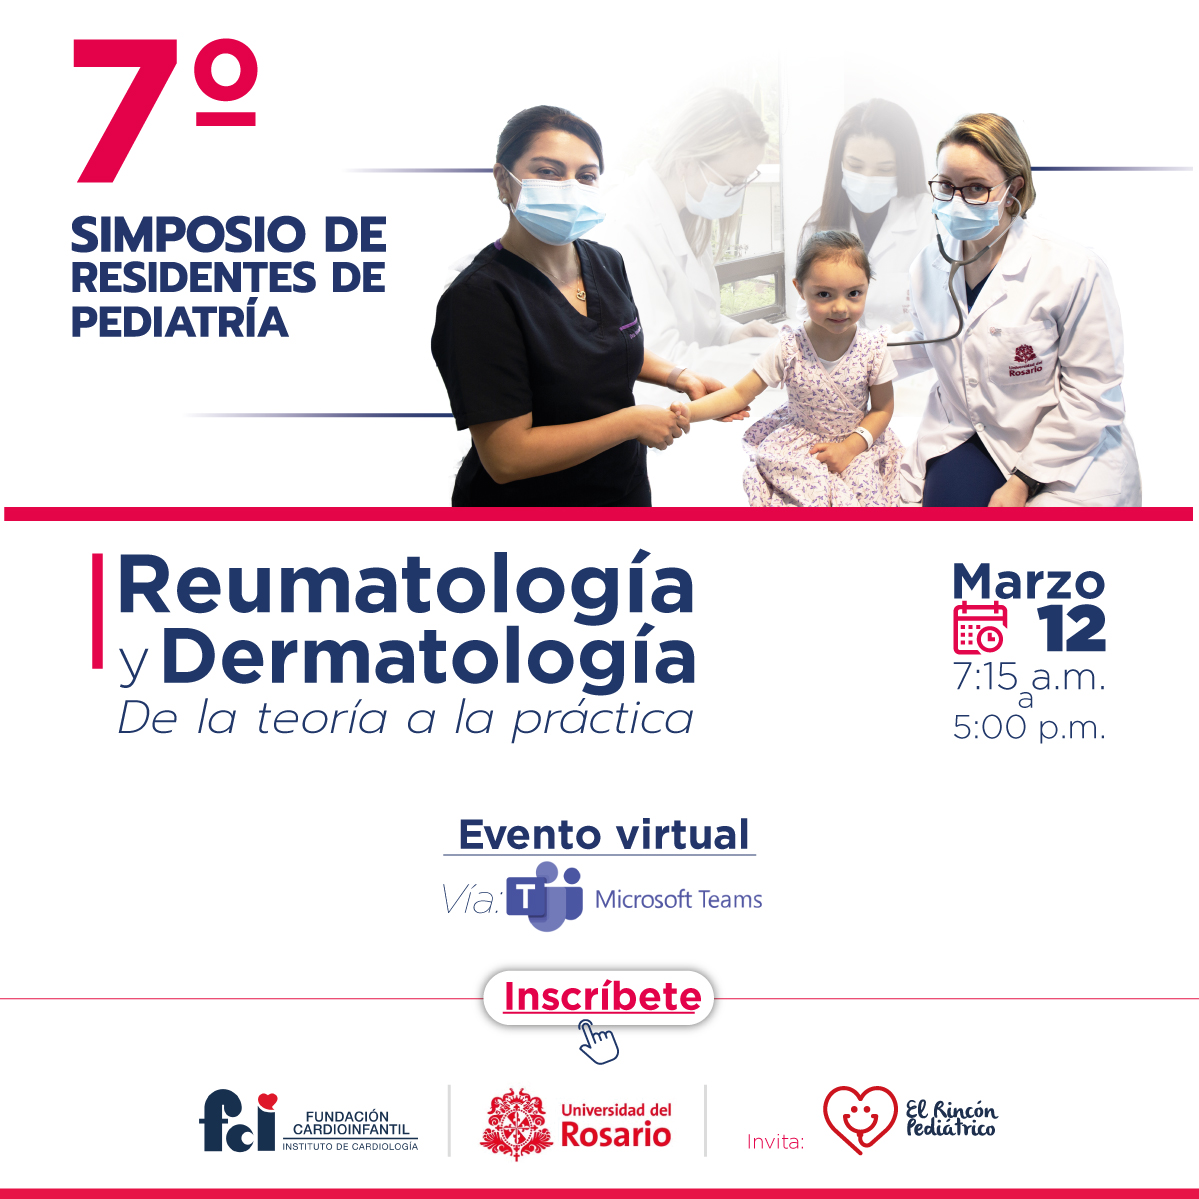 7° Simposio de Residentes de Pediatría. Reumatología y Dermatología de la Teoría a la práctica